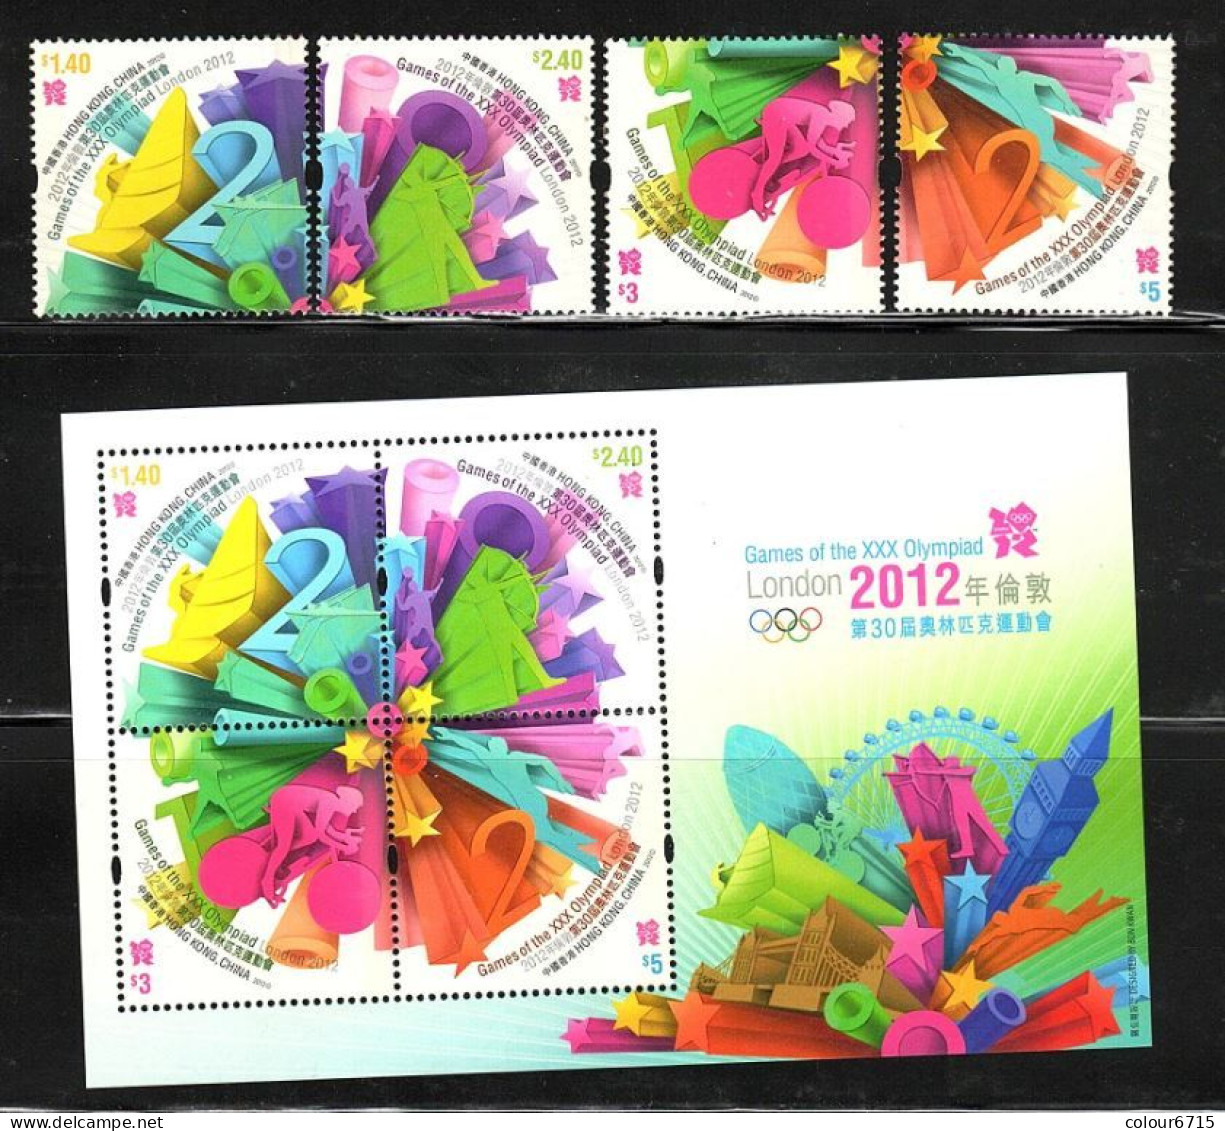 China Hong Kong 2012 Olympic Games - London, UK (stamps 4v+MS/Block) MNH - Nuovi